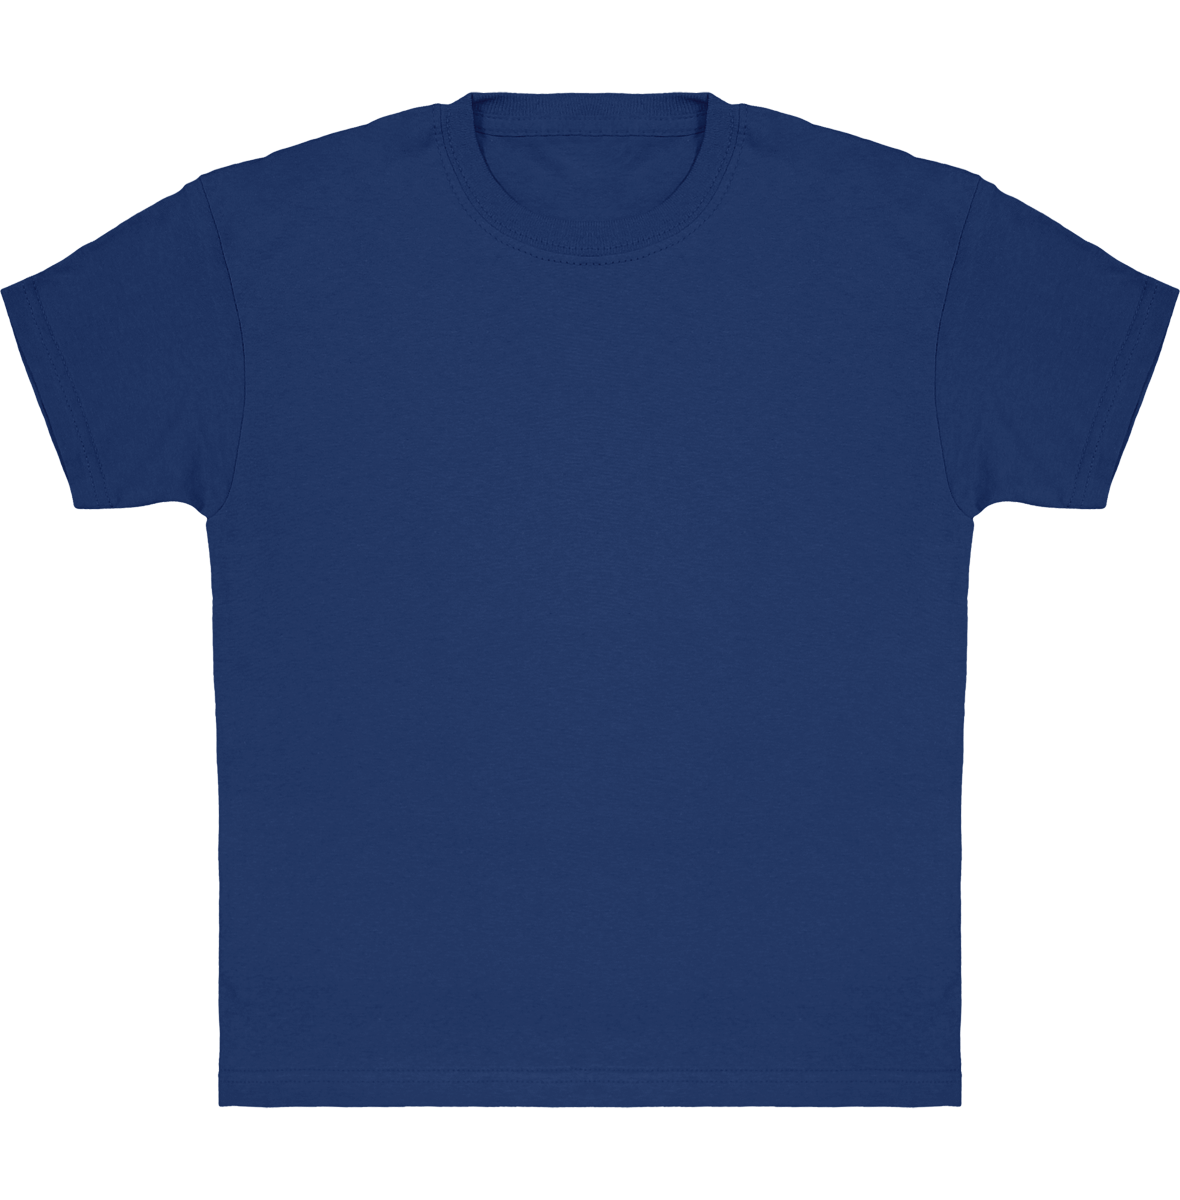 Camiseta Clásica De Niño Personalizada En Algodón 100% Royal Blue